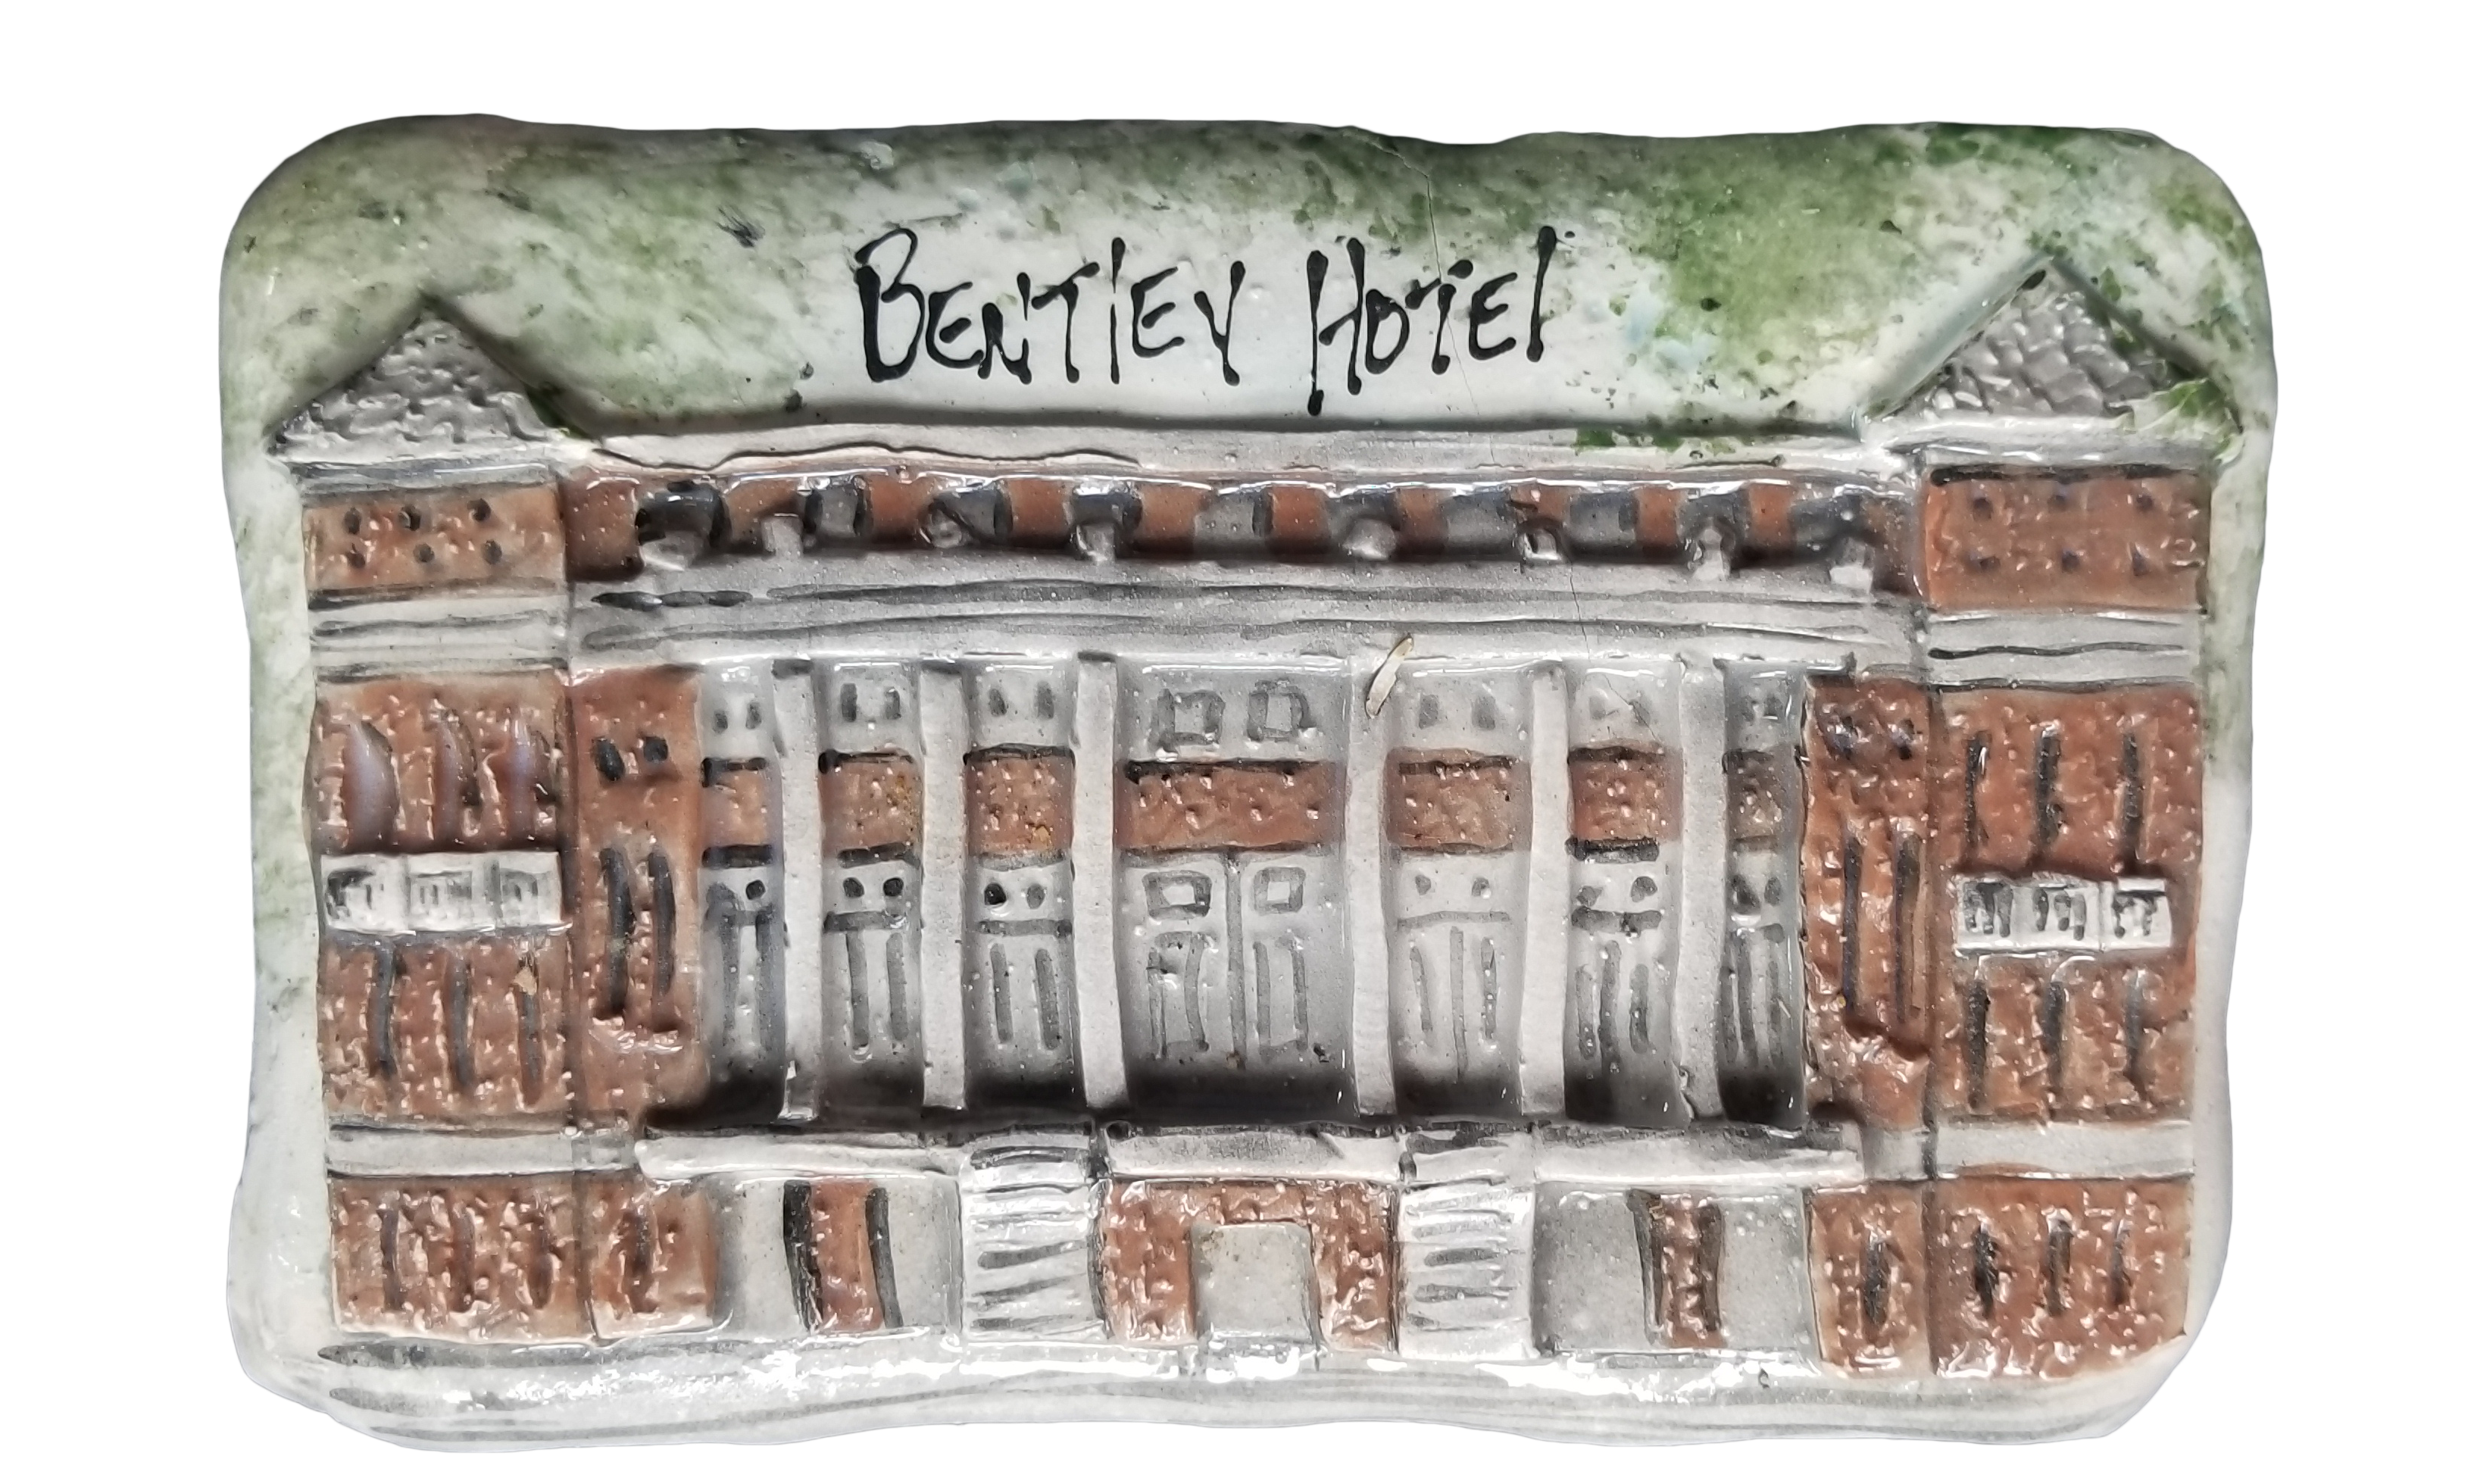 Bentley Hotel